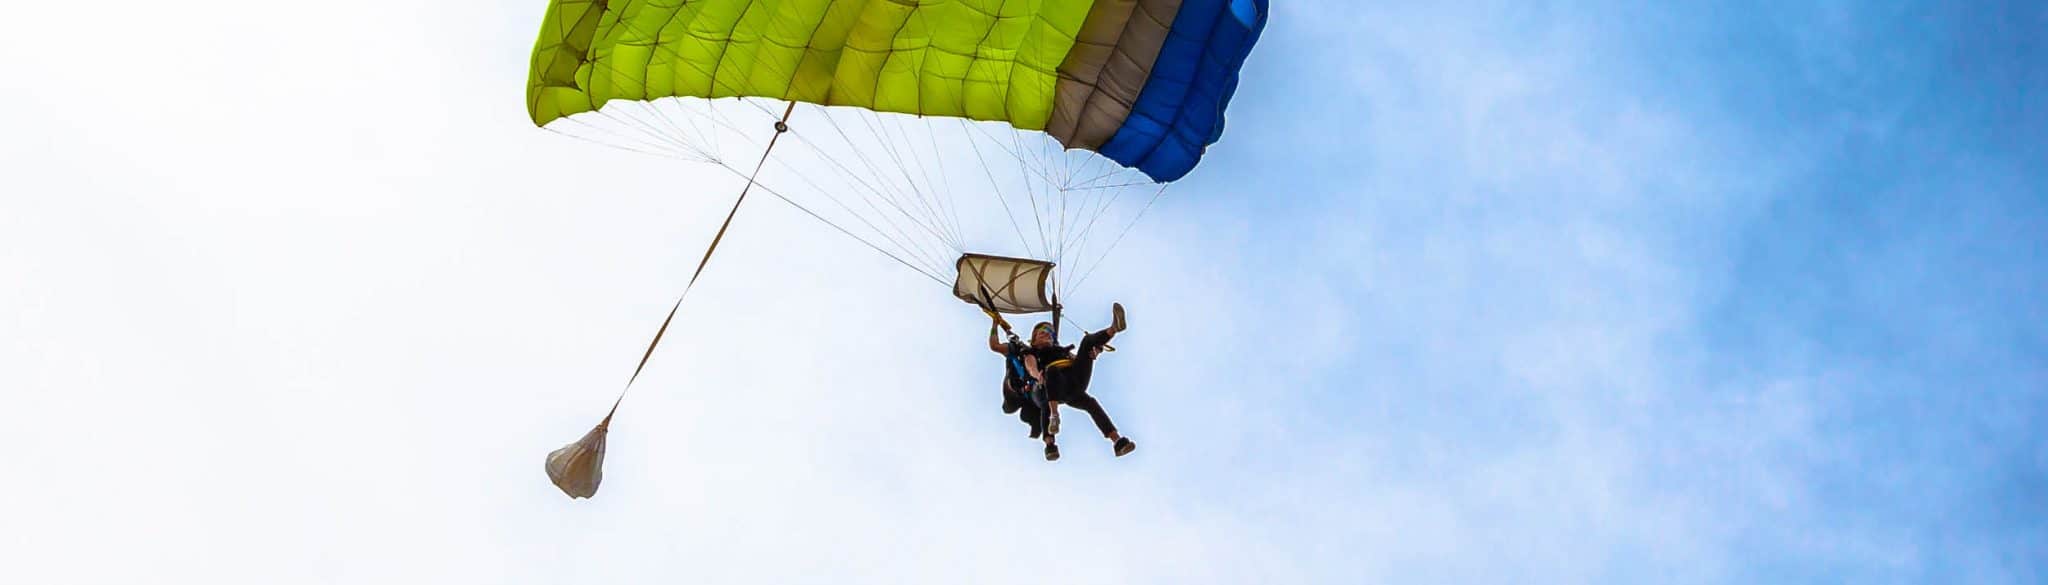 People skydiving at Moruya